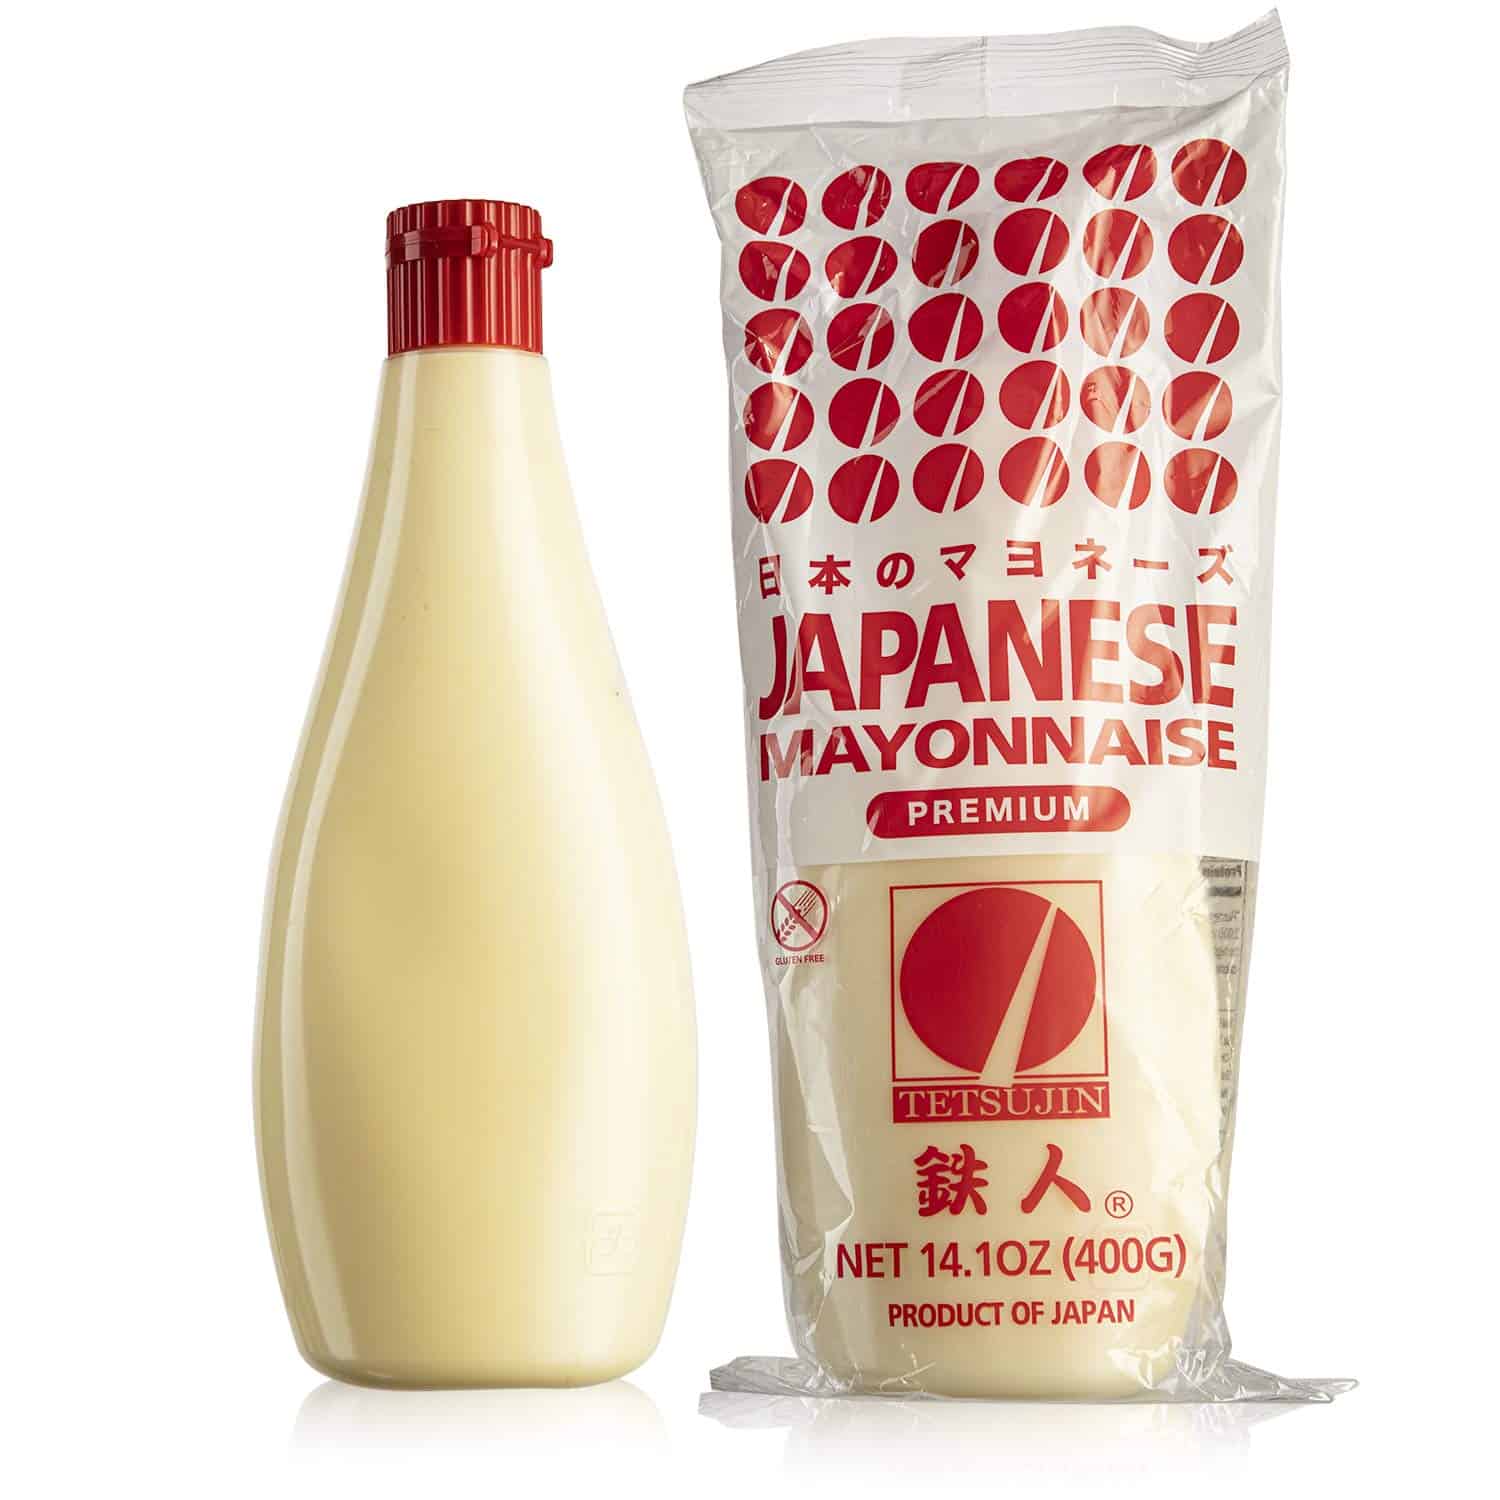 kewpie Japanese mayonnaise.